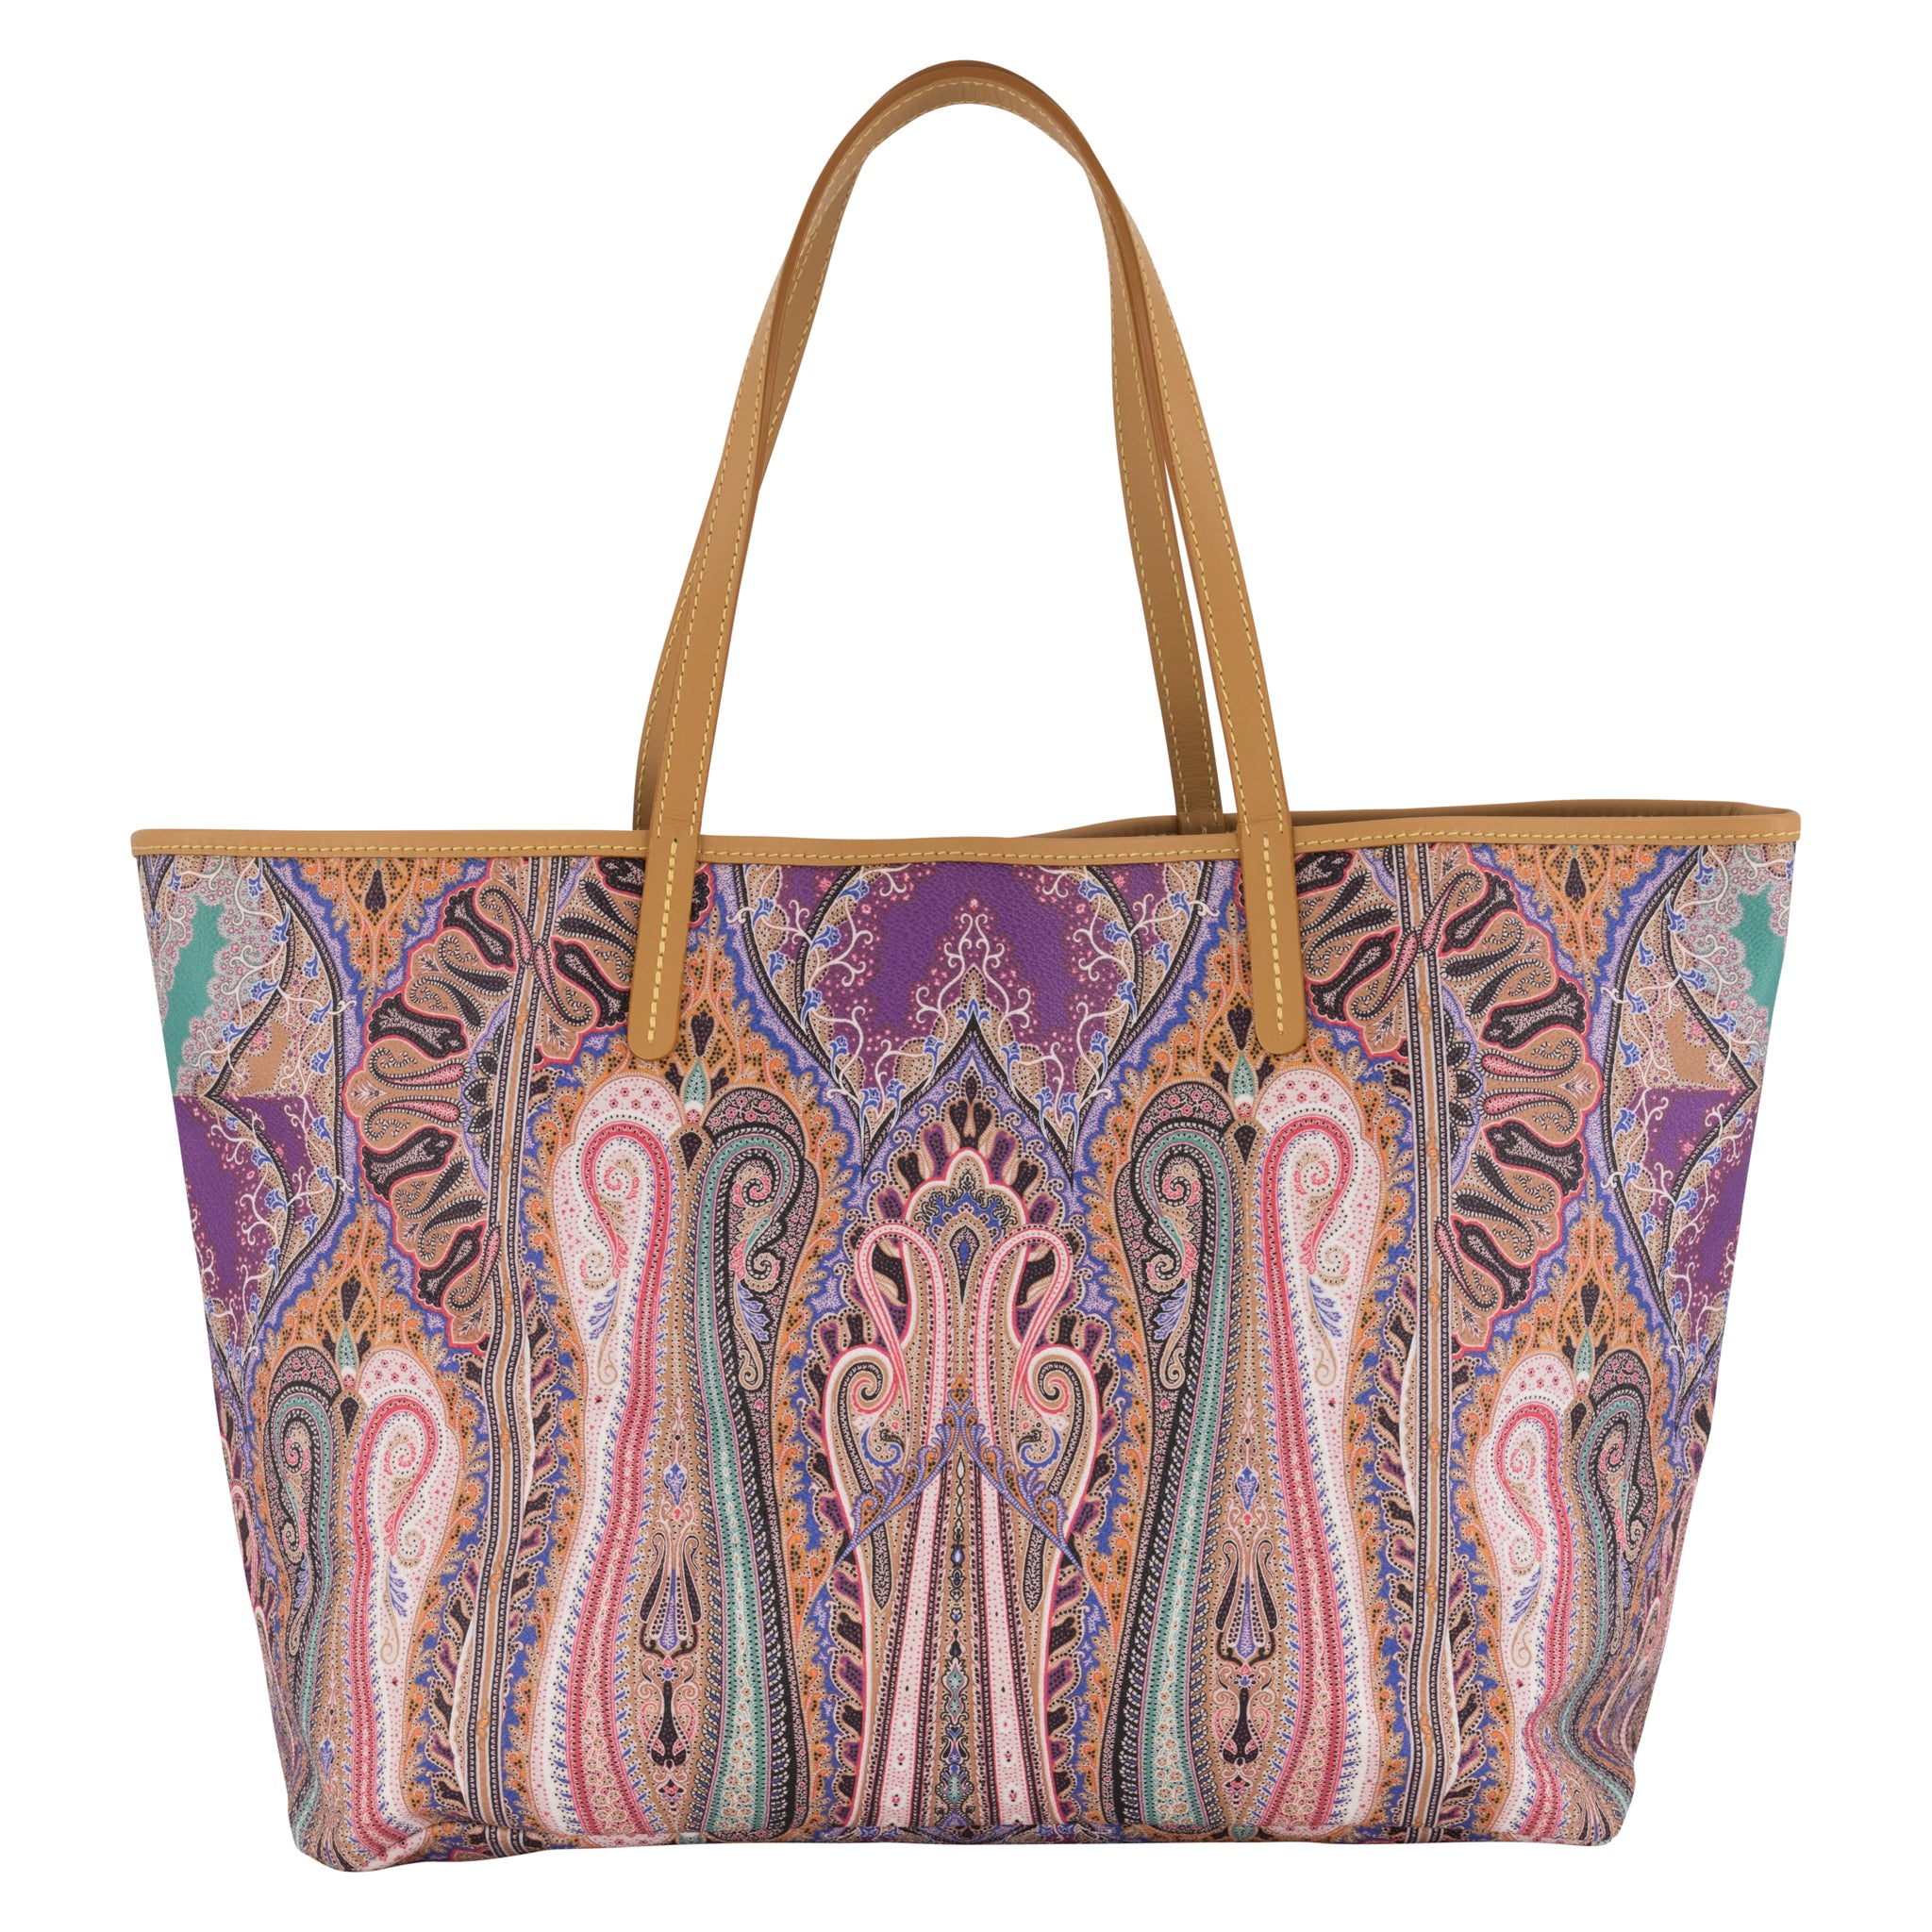 Louis Vuitton Corail Cotton Canvas Articles de Voyage Cabas GM Bag